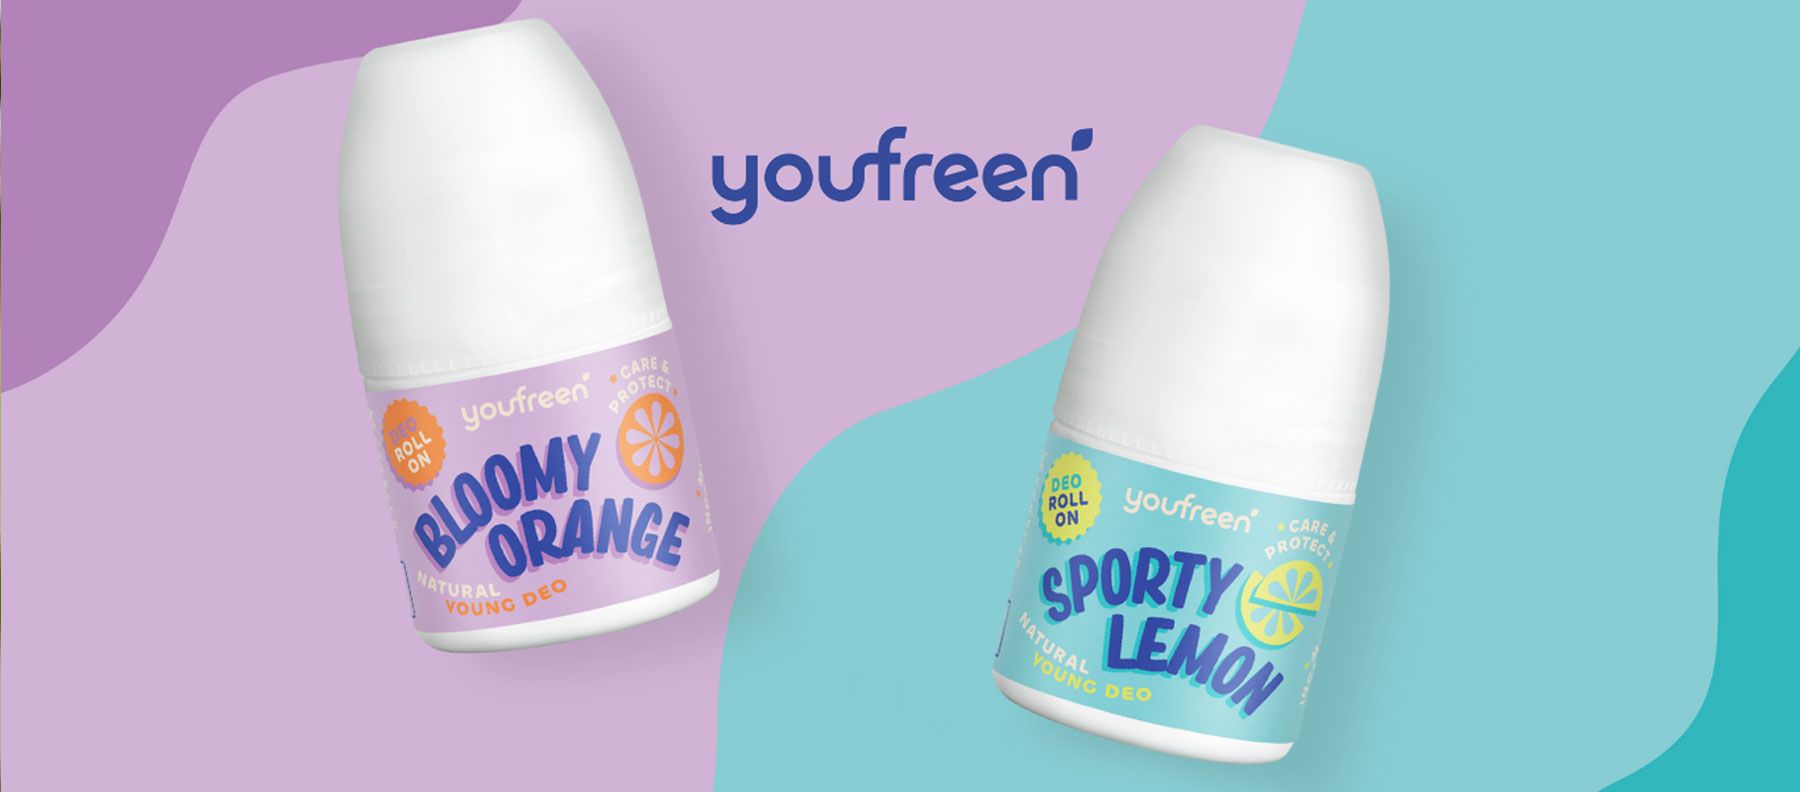 Svettning kommer med puberteten - youfree deodorant för barn och tonåringar